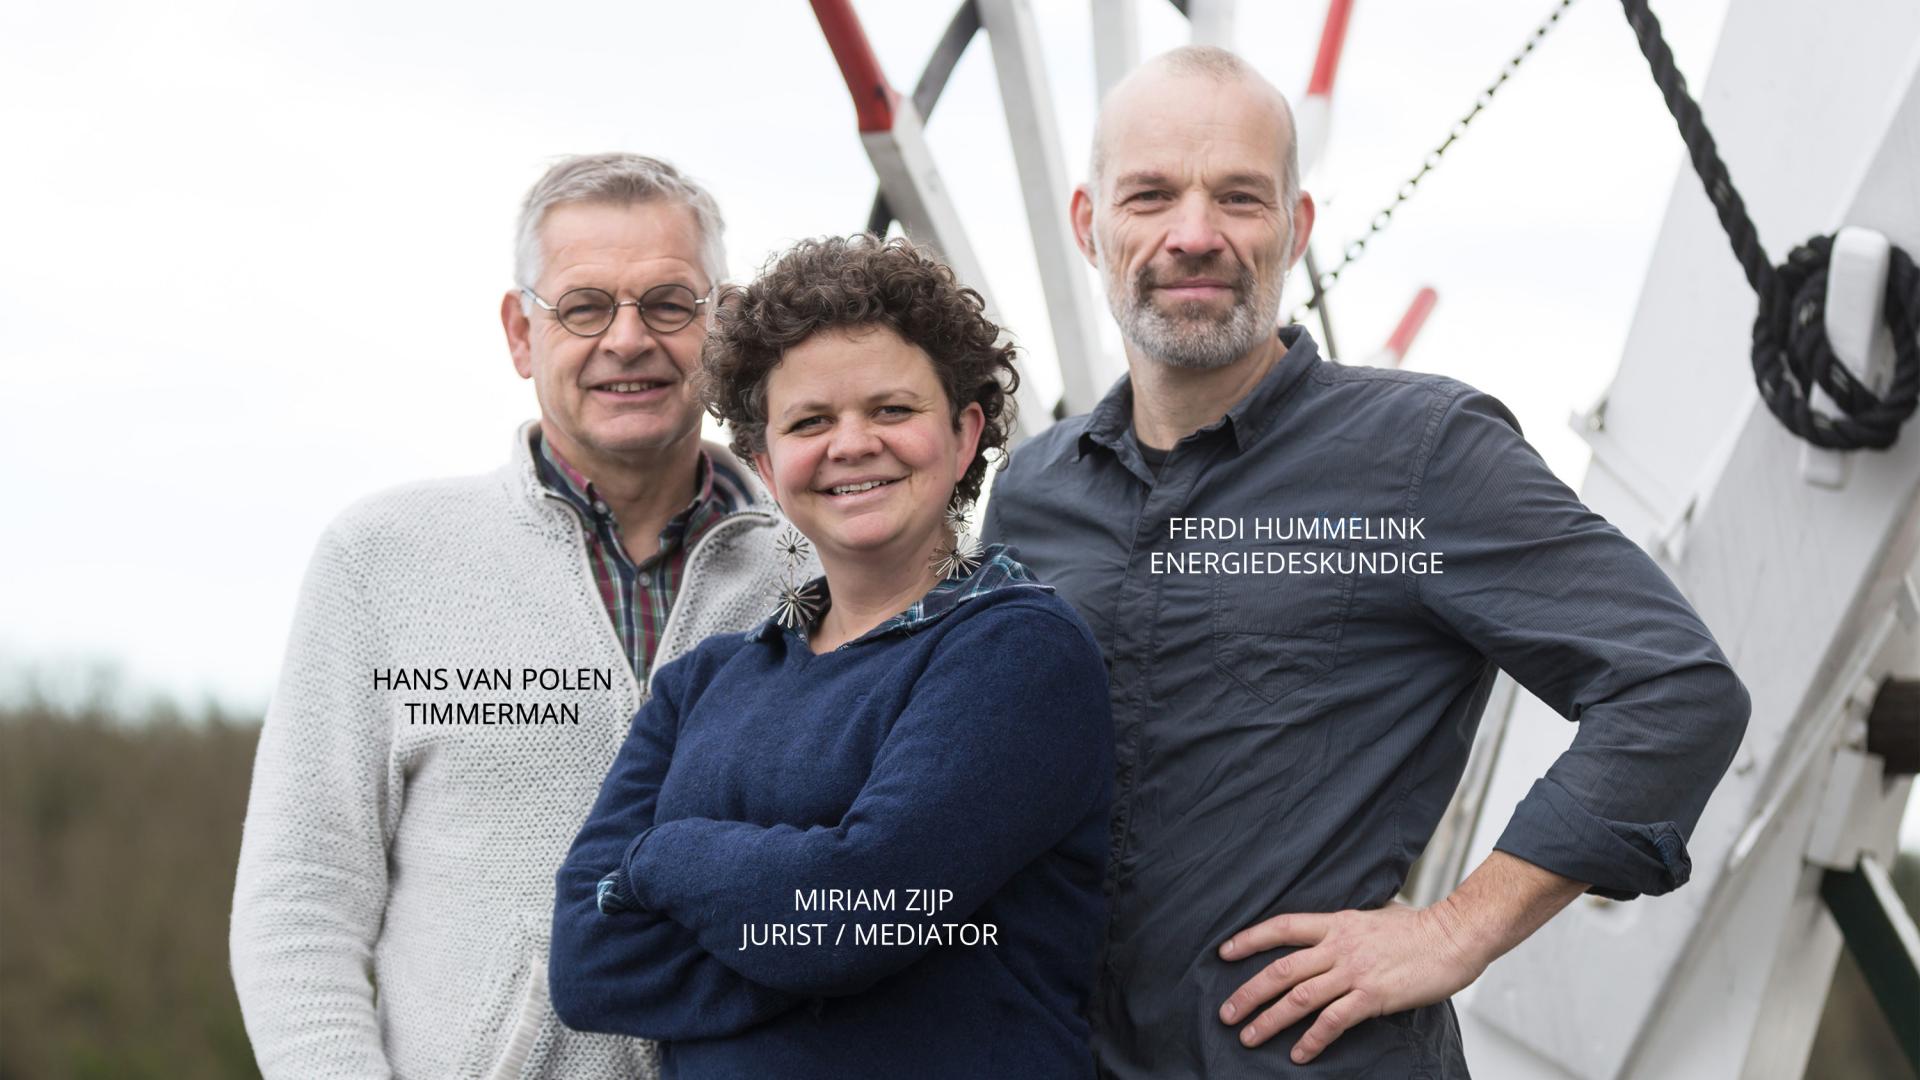 Kandidaten GL Olst-Wijhe: Hans van Polen, Miriam Zijp, Ferdi Hummelink